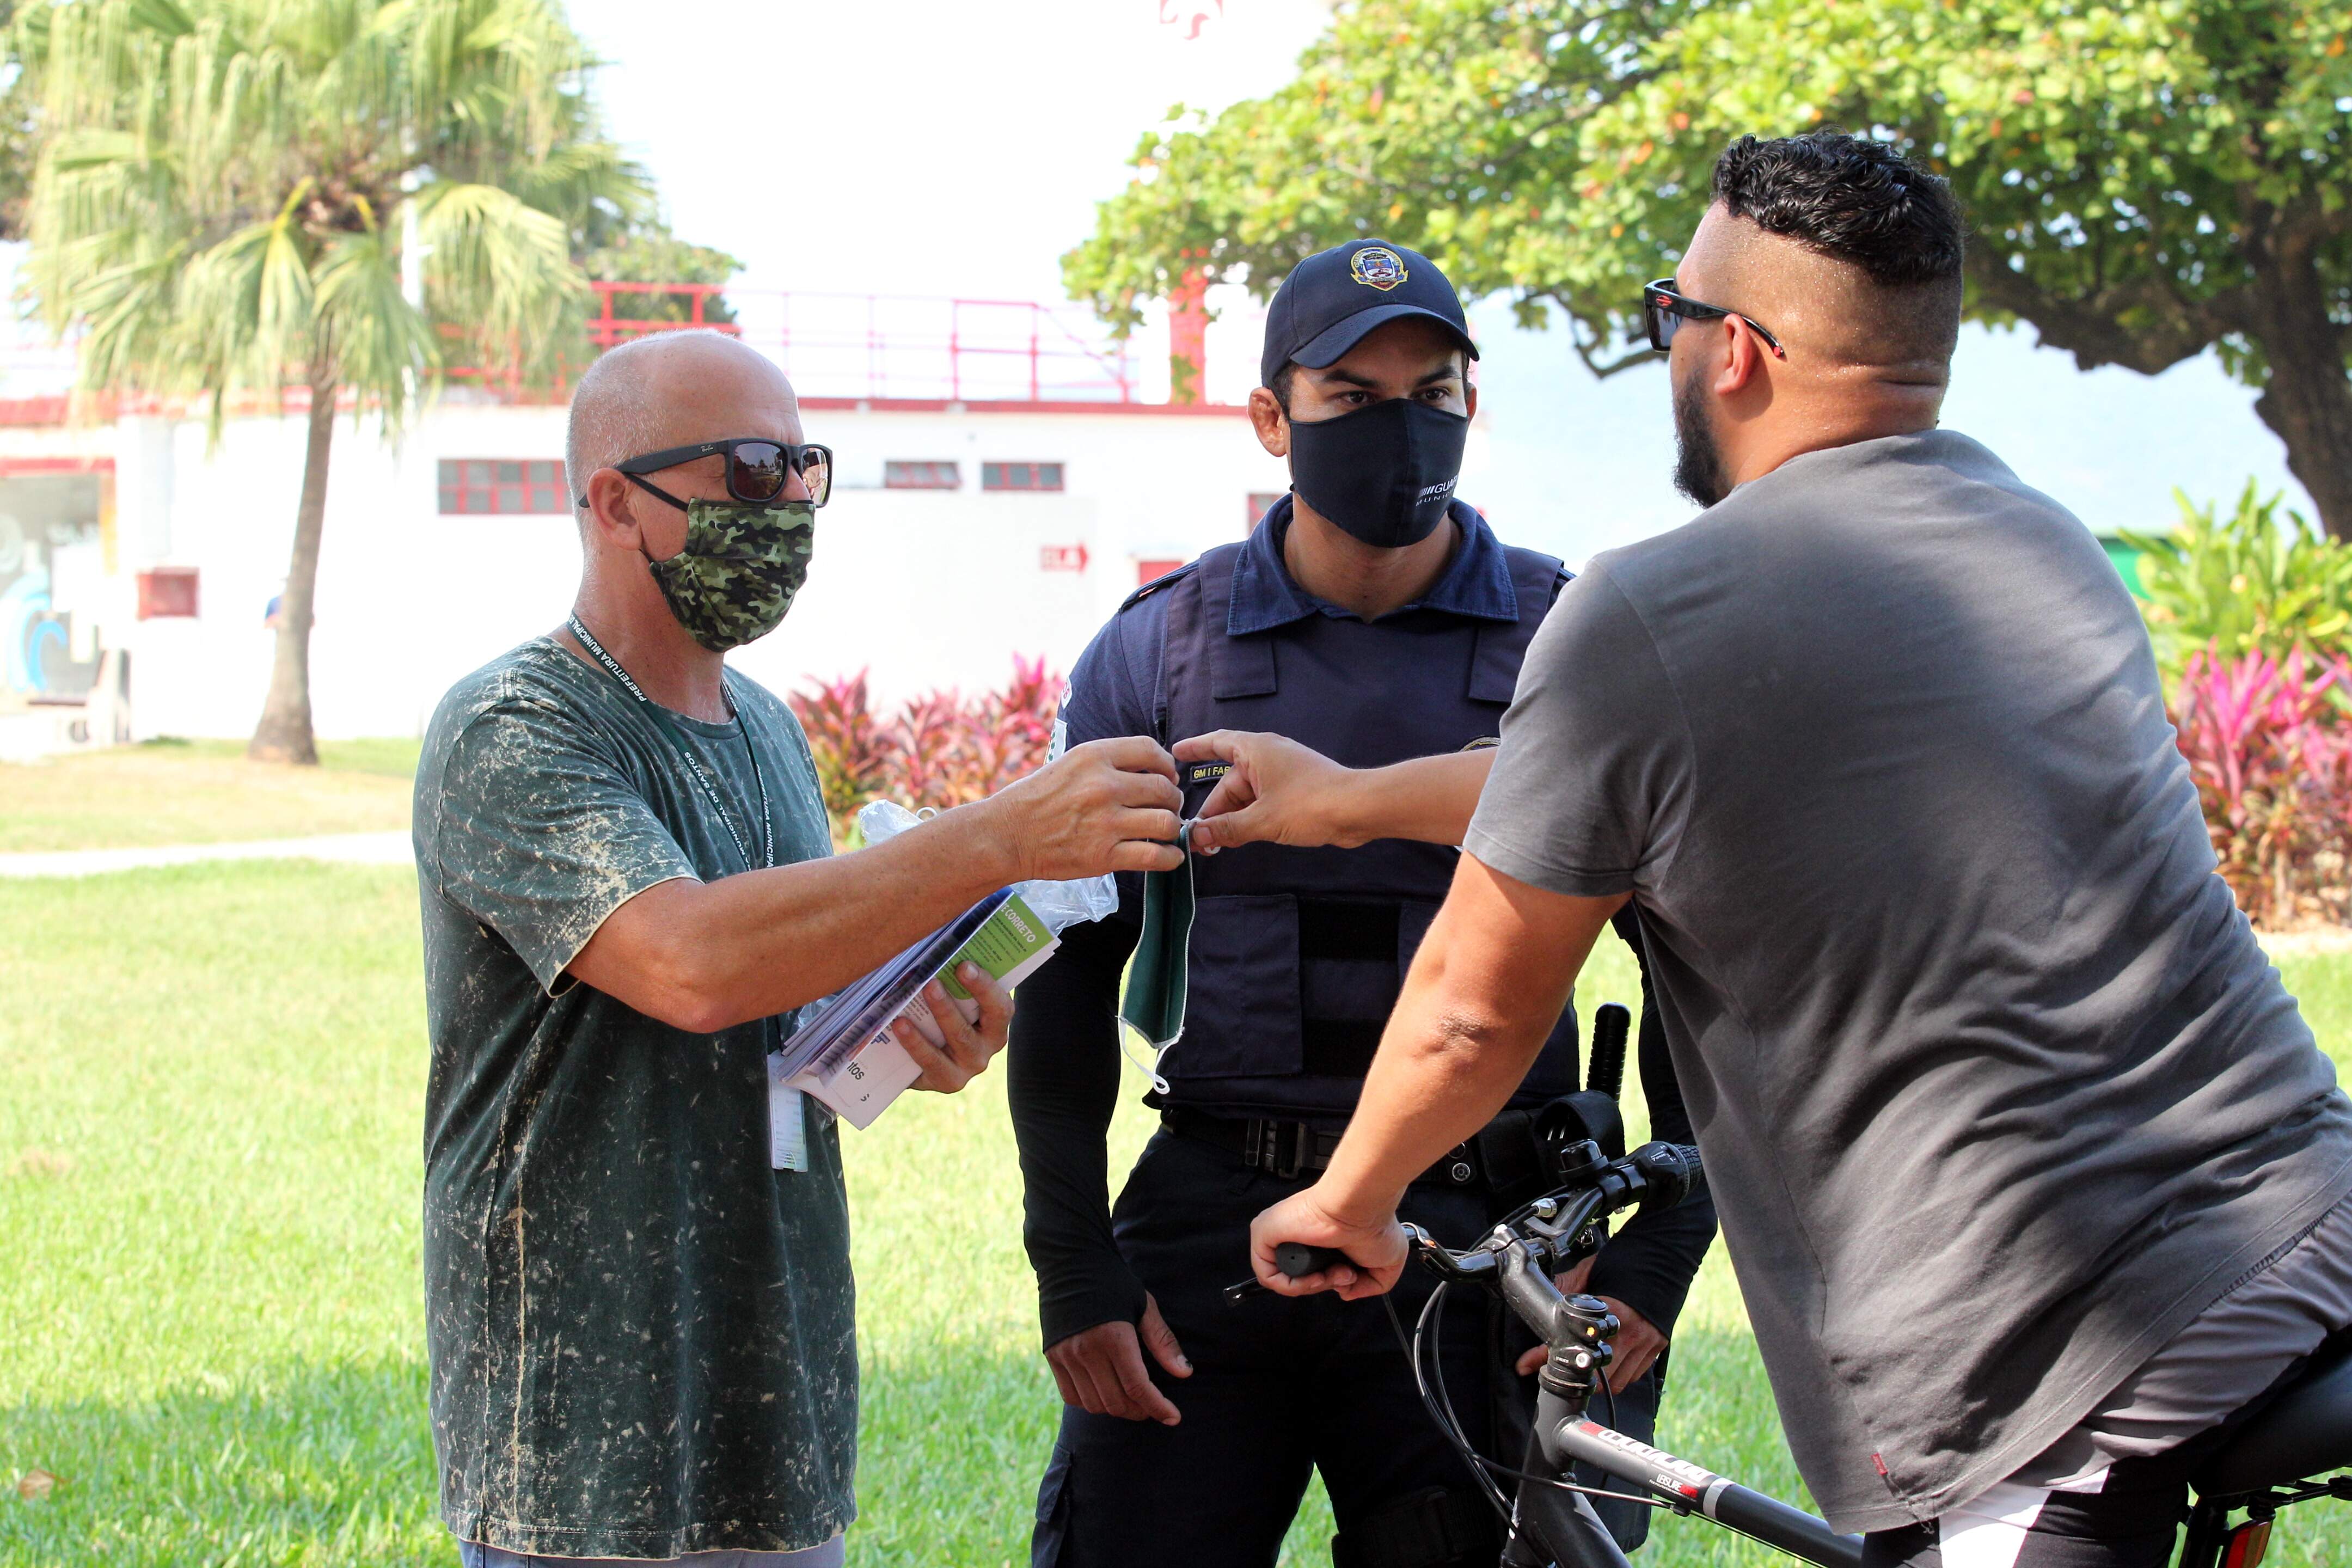 Equipes distribuíram máscaras para munícipes que percorriam a orla da cidade durante o fim de semana 